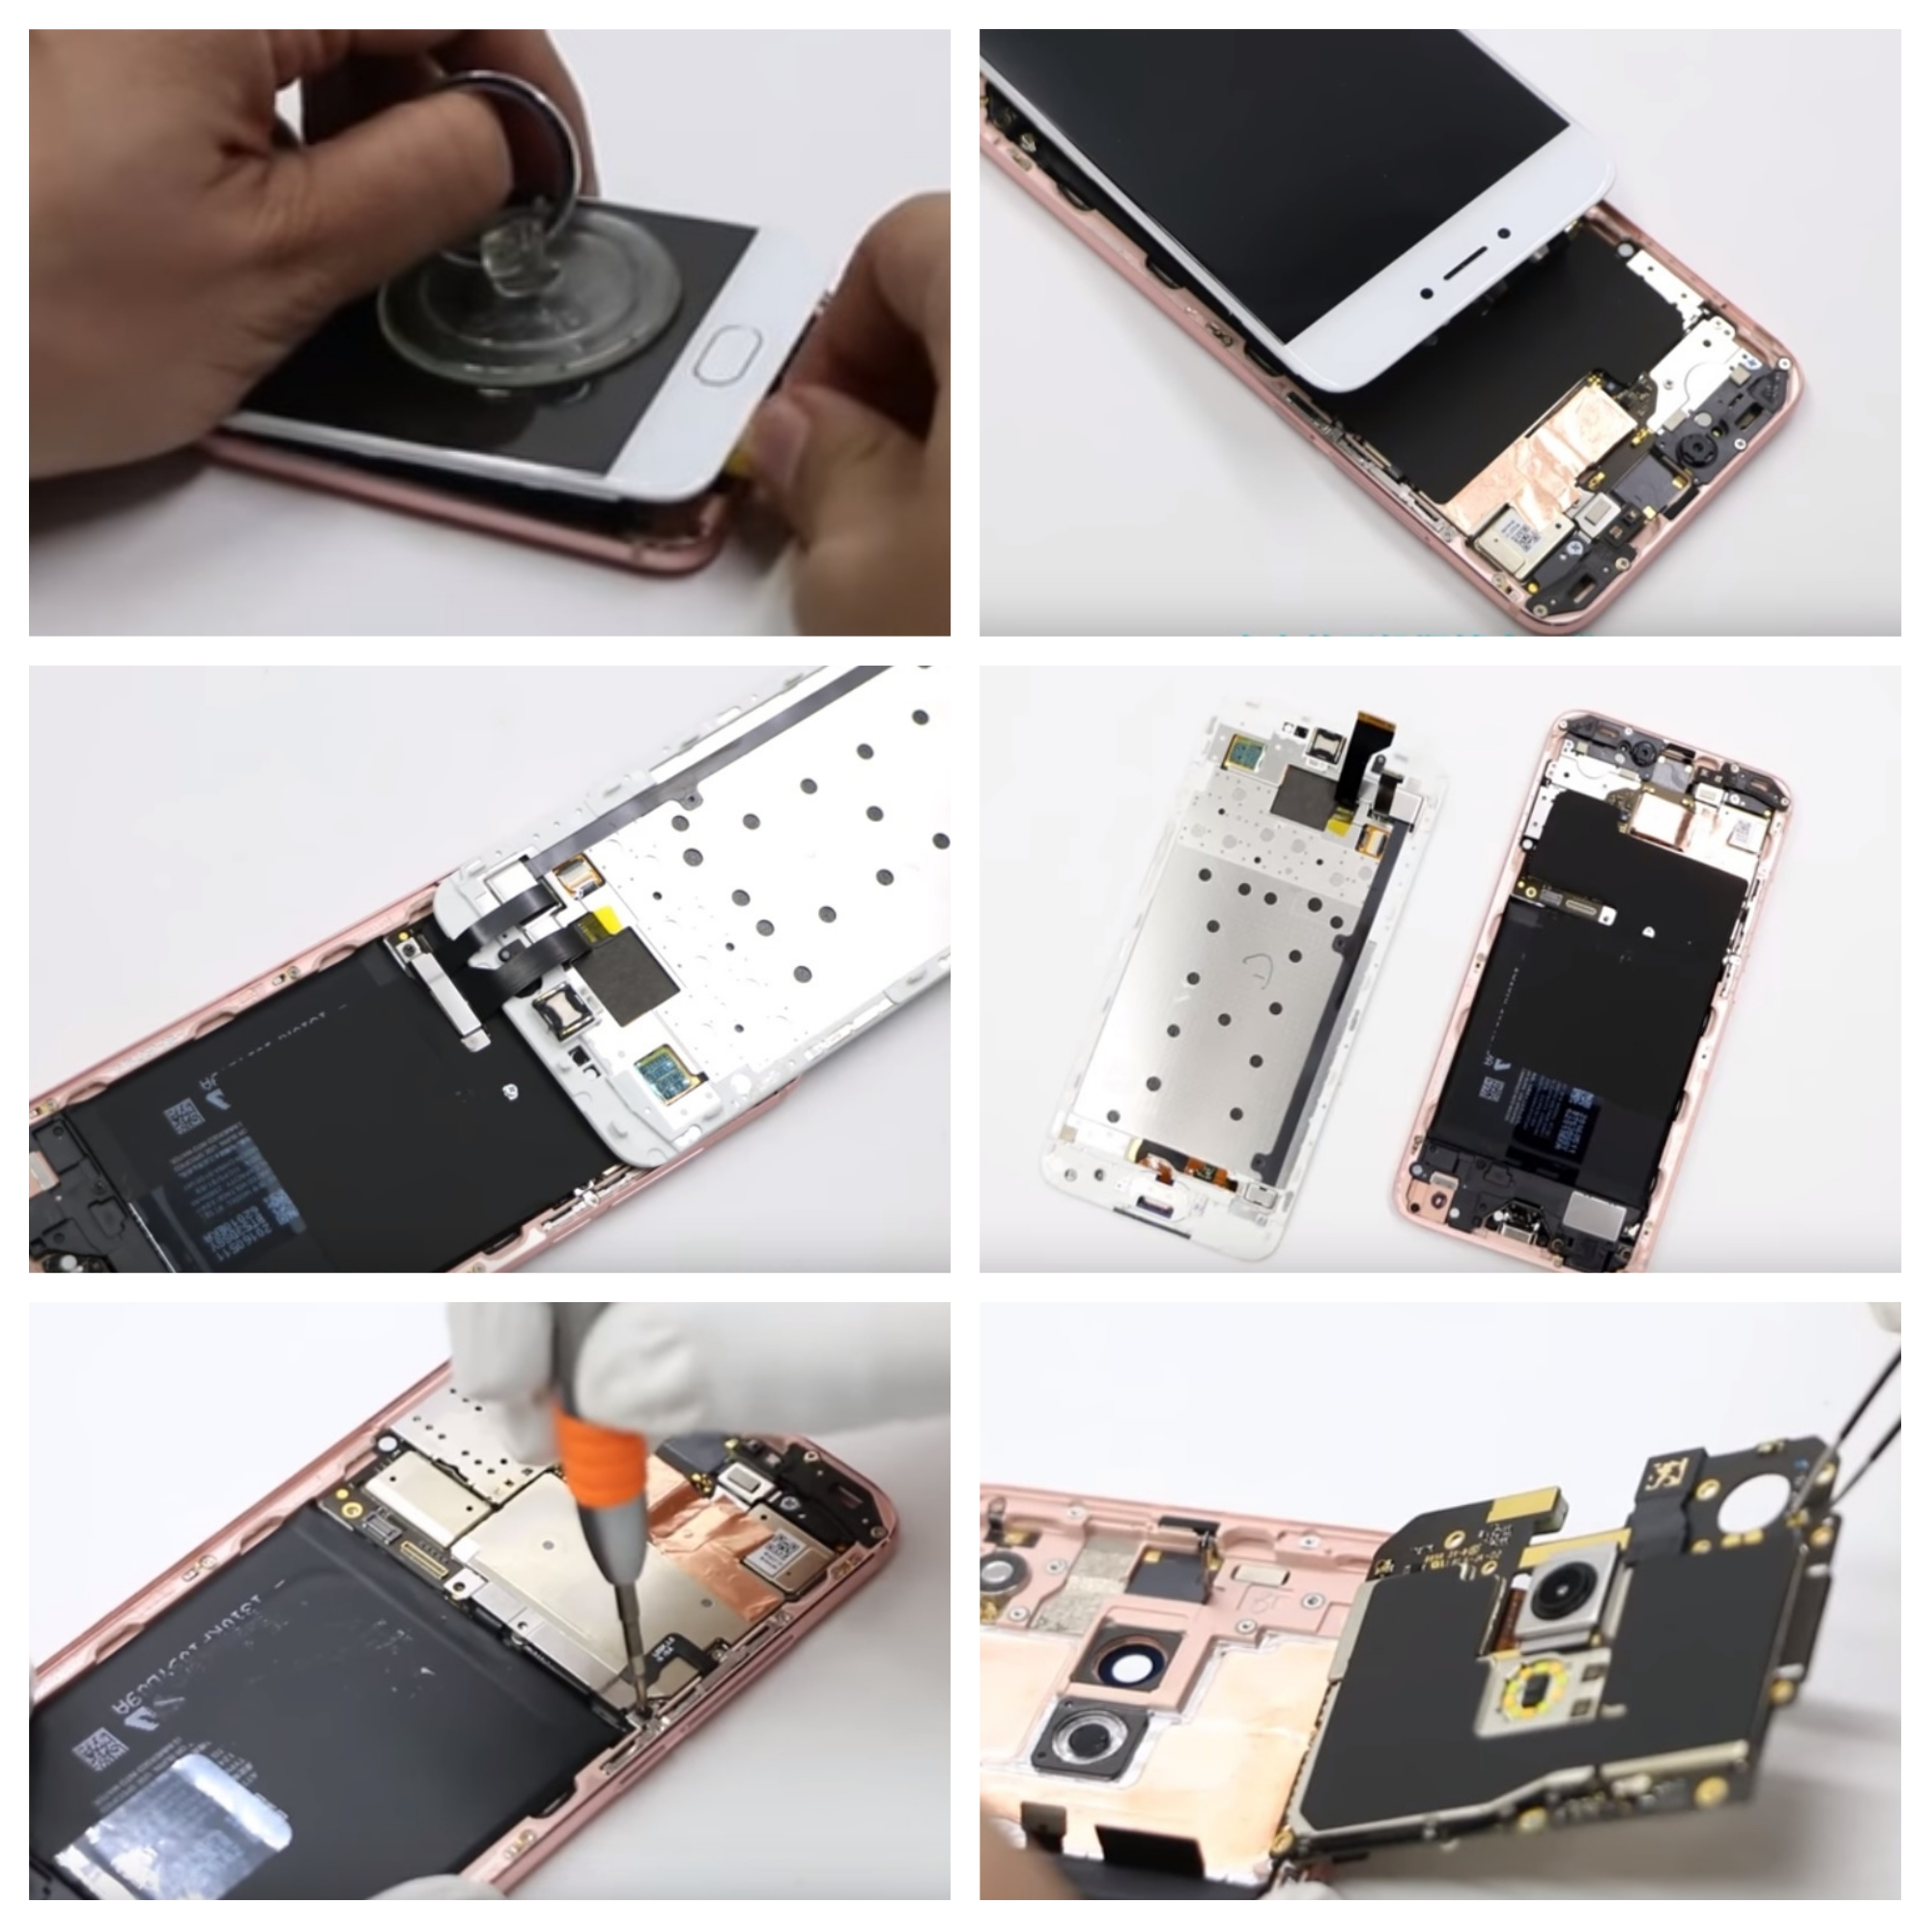 ремонт смартфонов Meizu в Ромсат-сервис